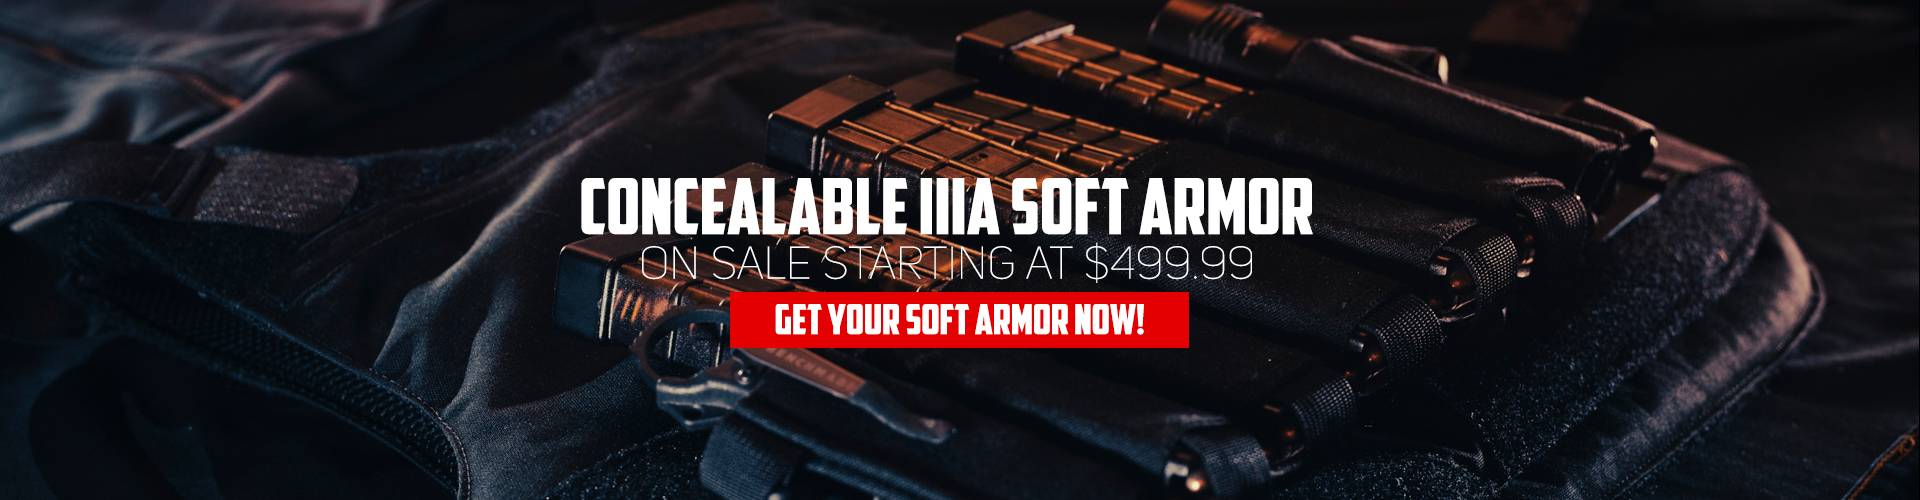 RMA Concealable Soft Armor Main